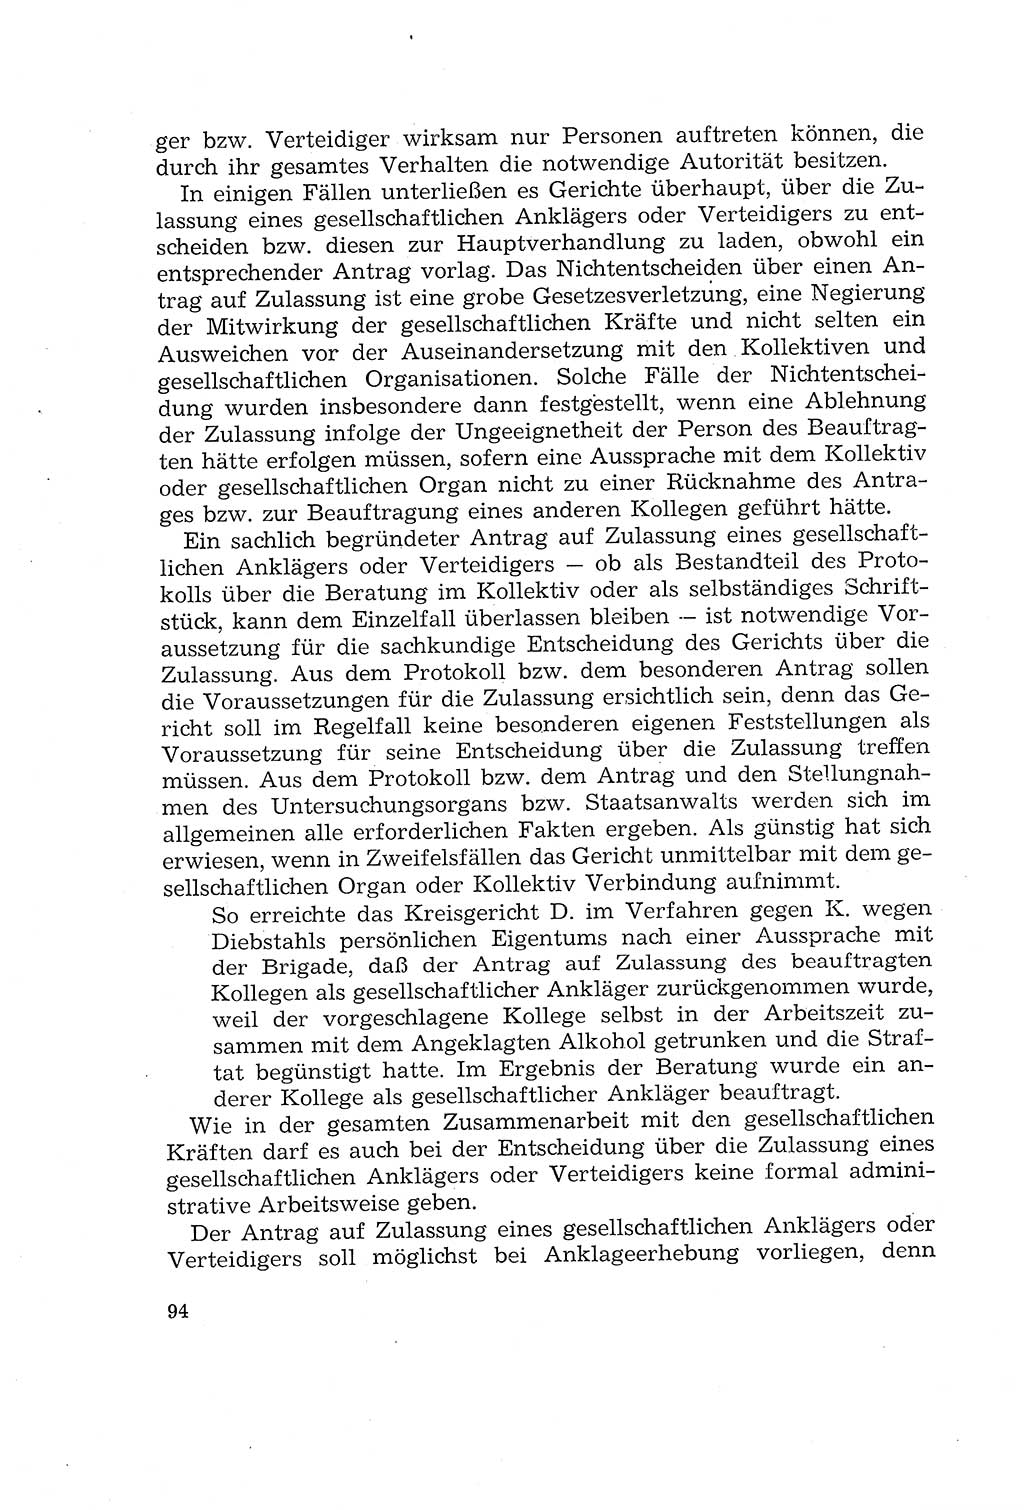 Die Mitwirkung der Werktätigen am Strafverfahren [Deutsche Demokratische Republik (DDR)] 1966, Seite 94 (Mitw. Str.-Verf. DDR 1966, S. 94)